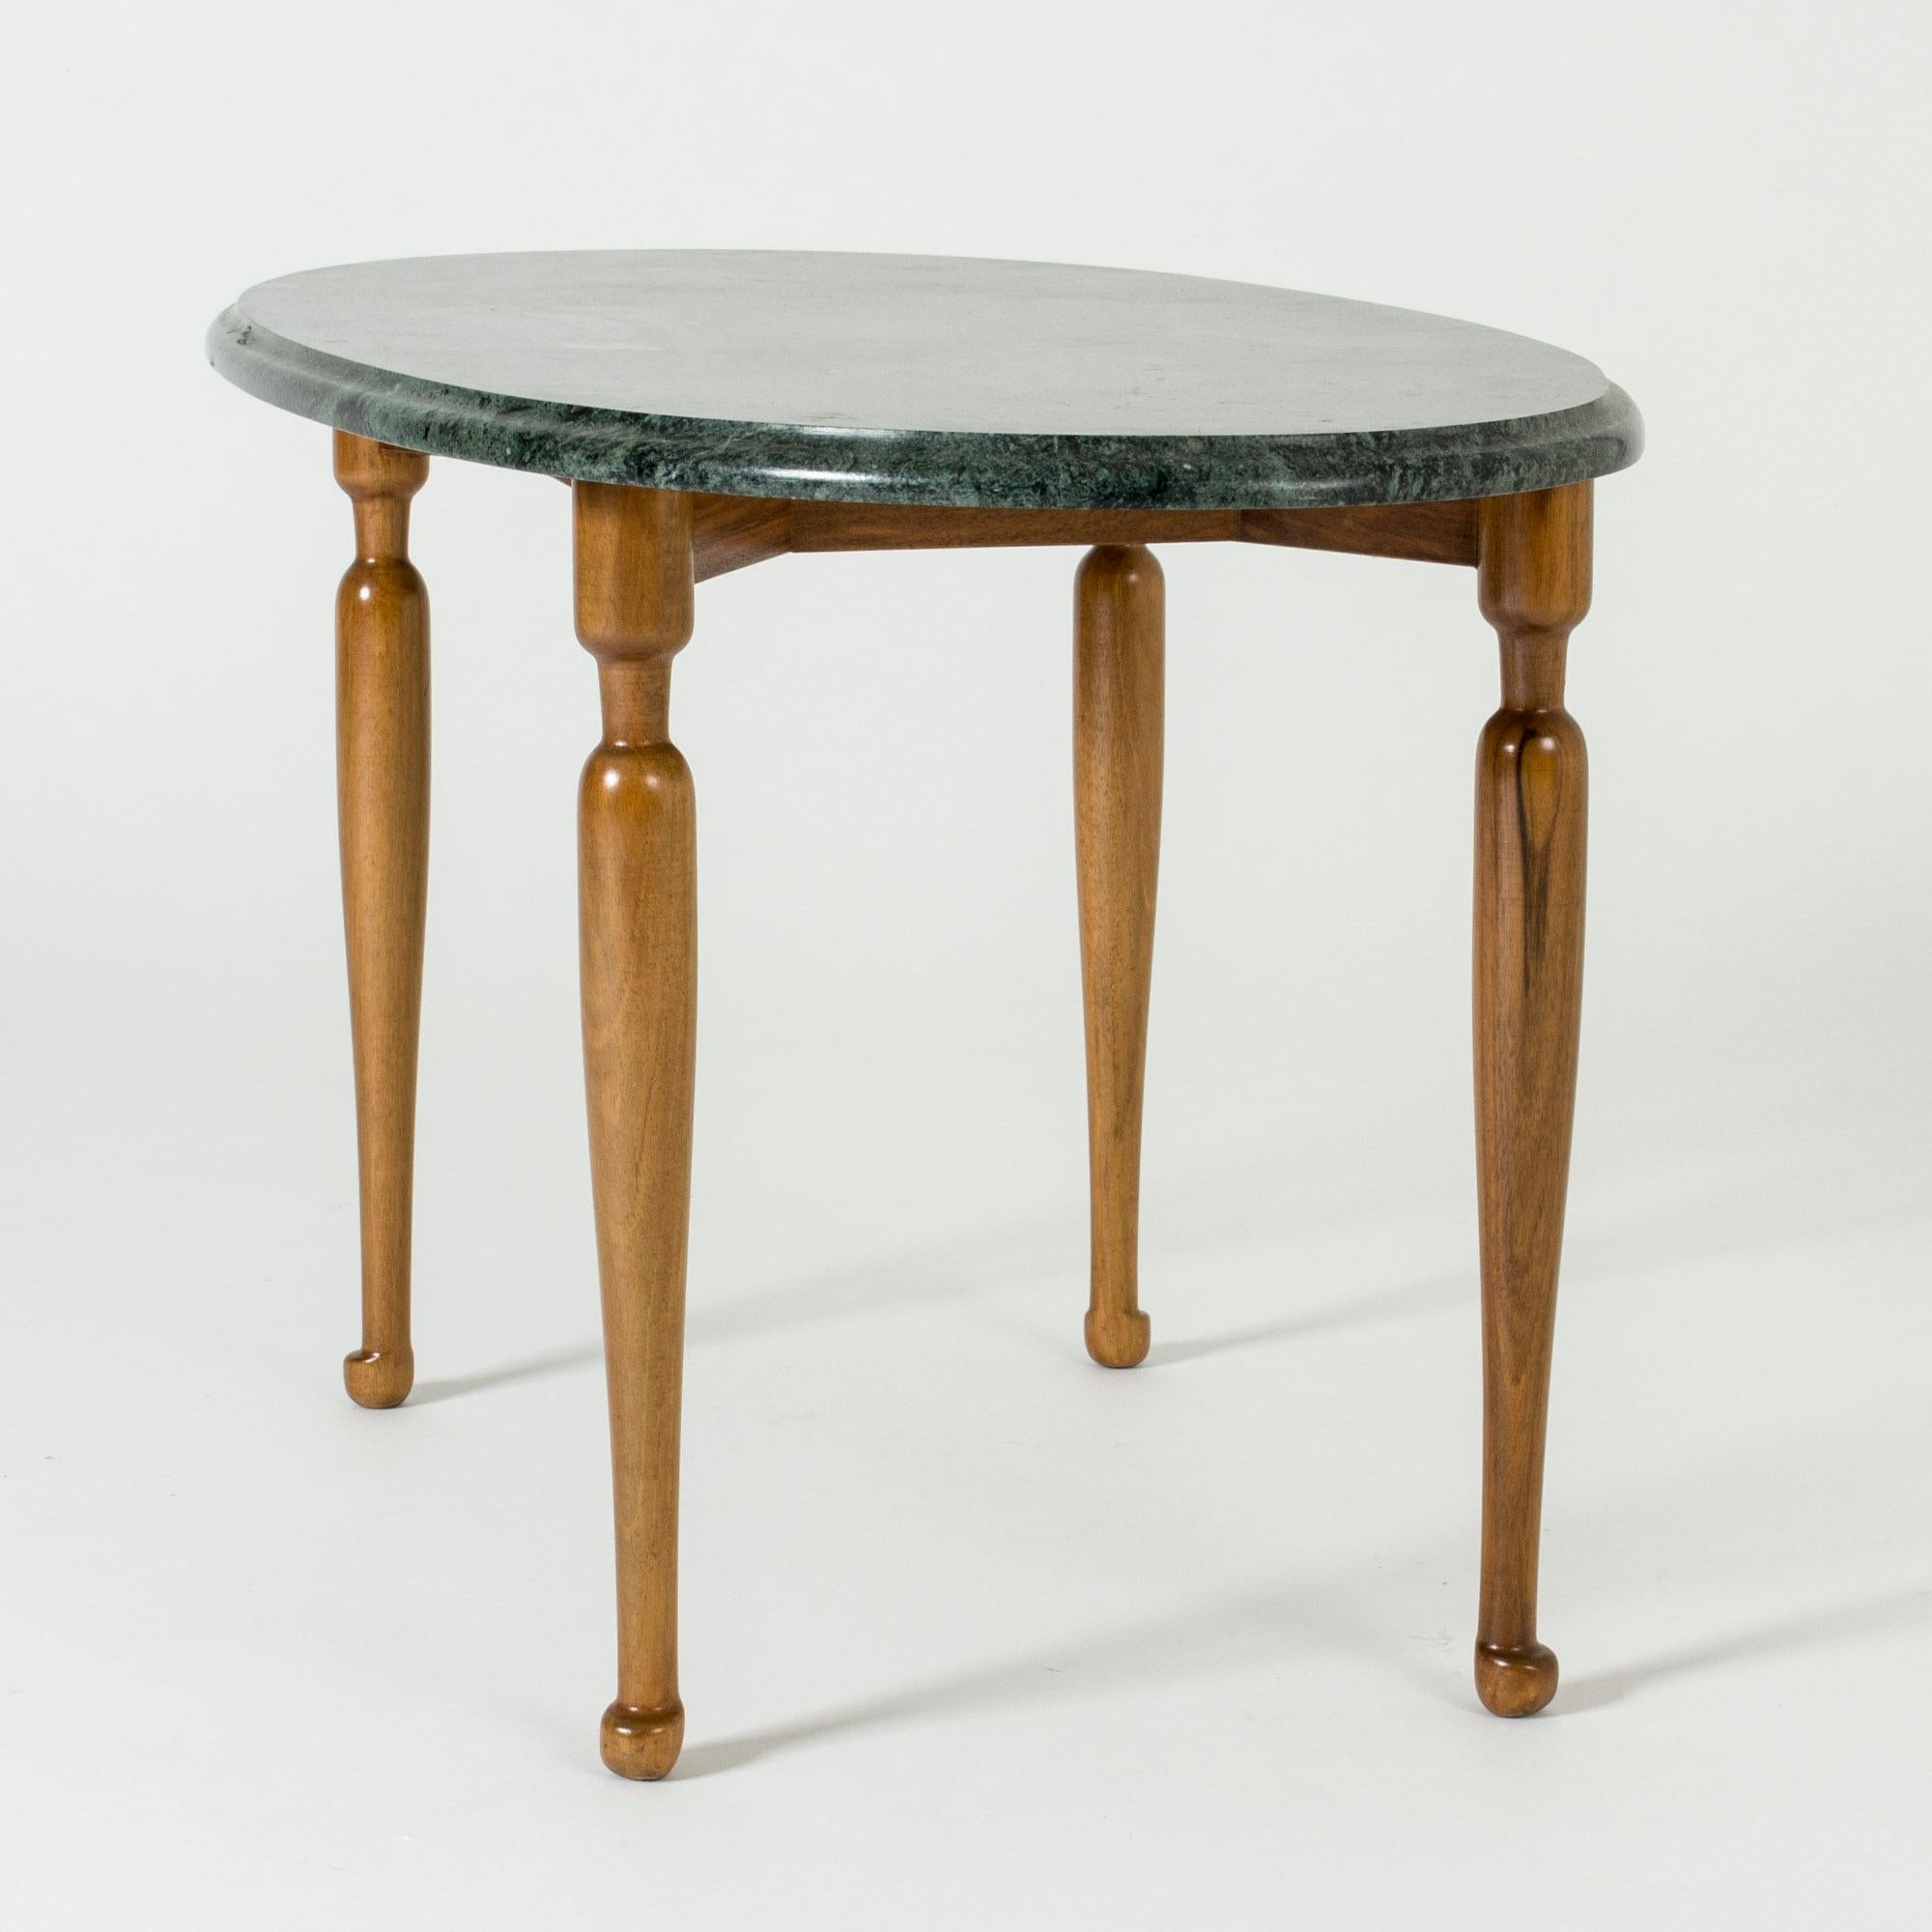 Schöner Beistelltisch von Josef Frank, mit einer ovalen Tischplatte aus grünem Marmor auf einem schlanken Mahagonisockel. Tiefgrüner Marmor, schöne skulptierte Beine und Füße.